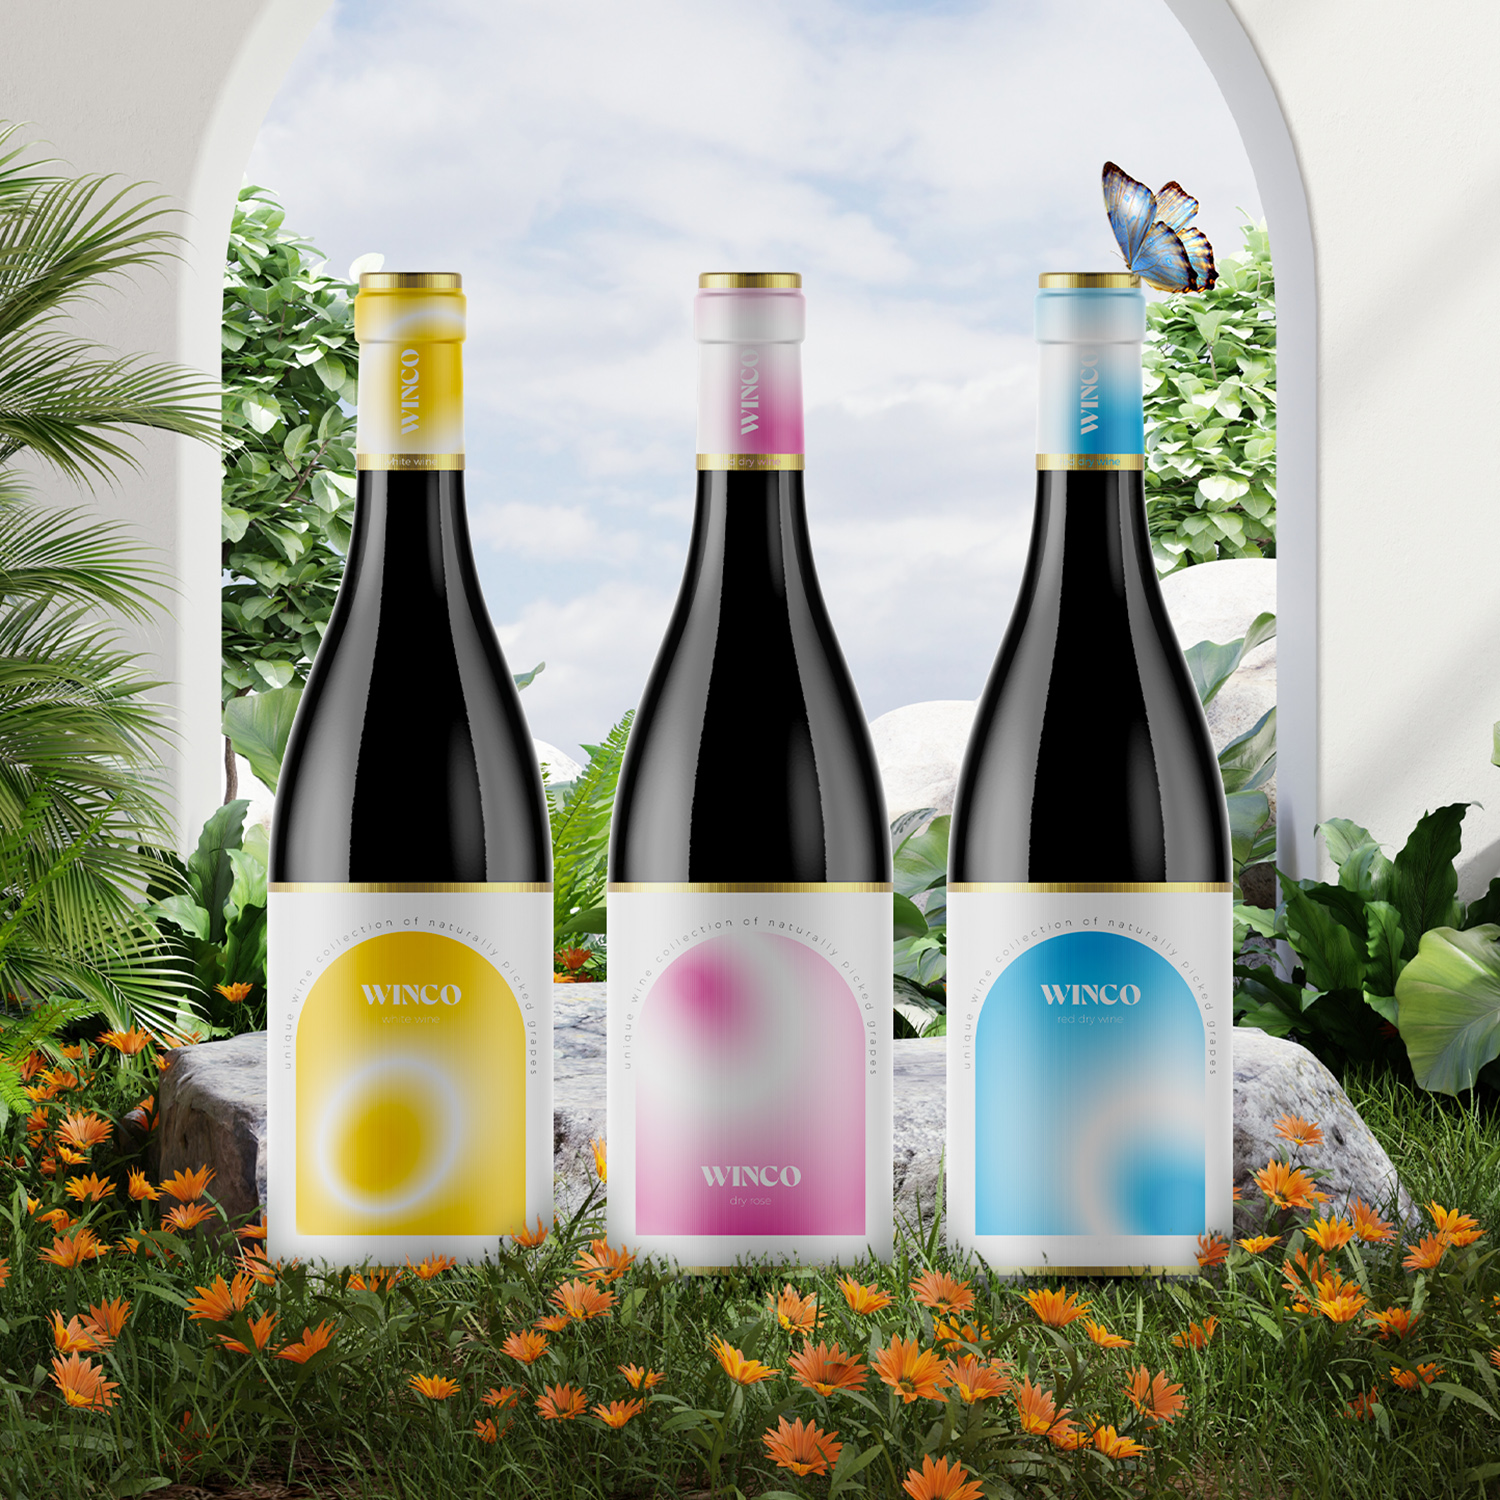 Winco Wine Label Design